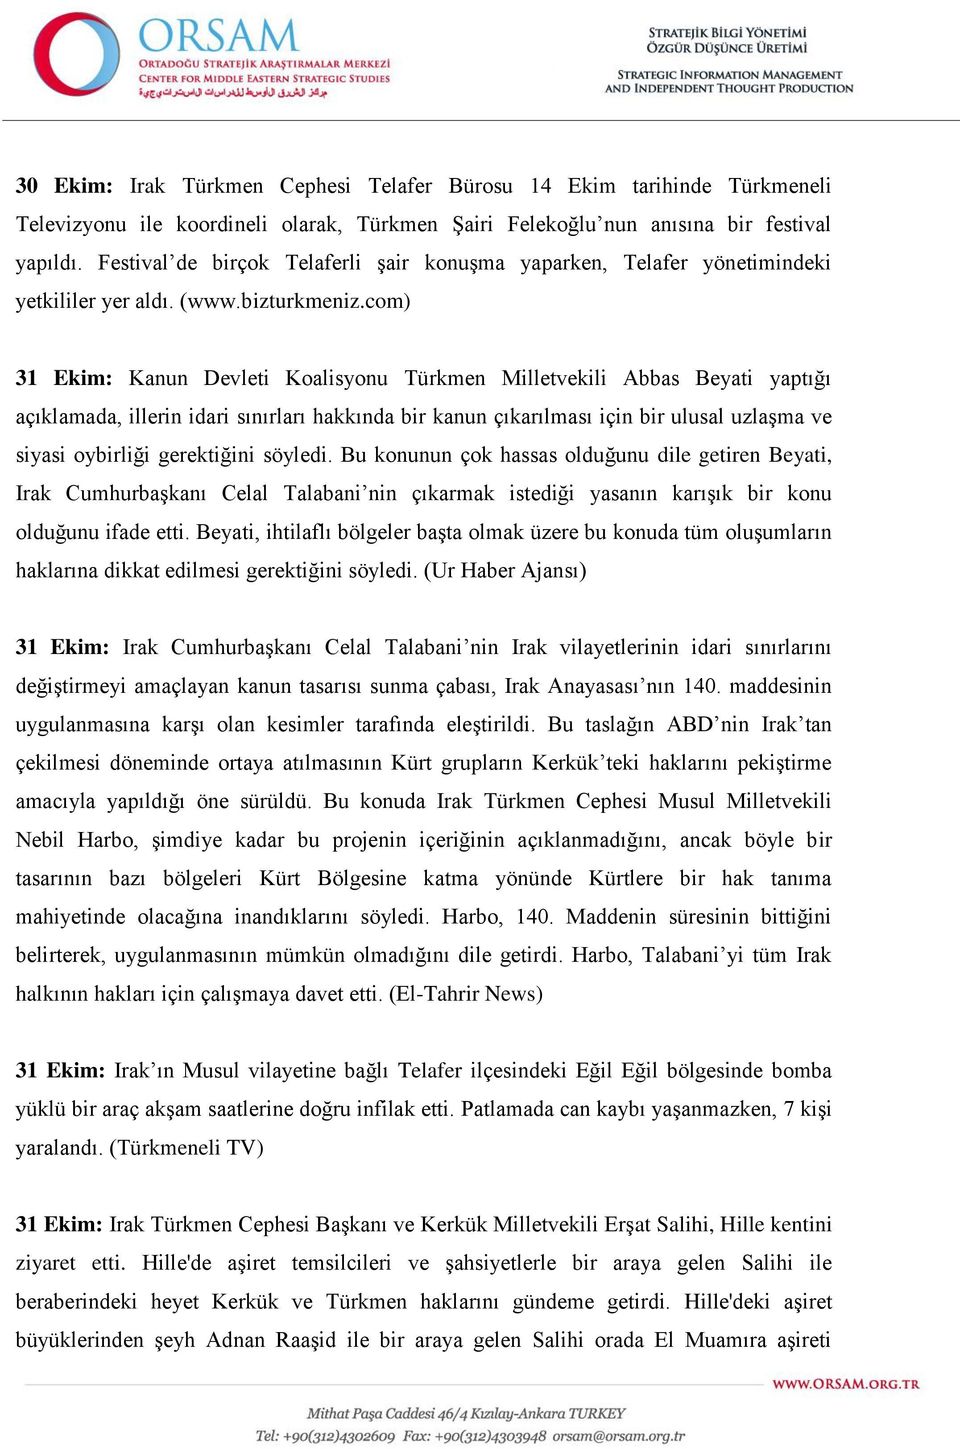 com) 31 Ekim: Kanun Devleti Koalisyonu Türkmen Milletvekili Abbas Beyati yaptığı açıklamada, illerin idari sınırları hakkında bir kanun çıkarılması için bir ulusal uzlaşma ve siyasi oybirliği